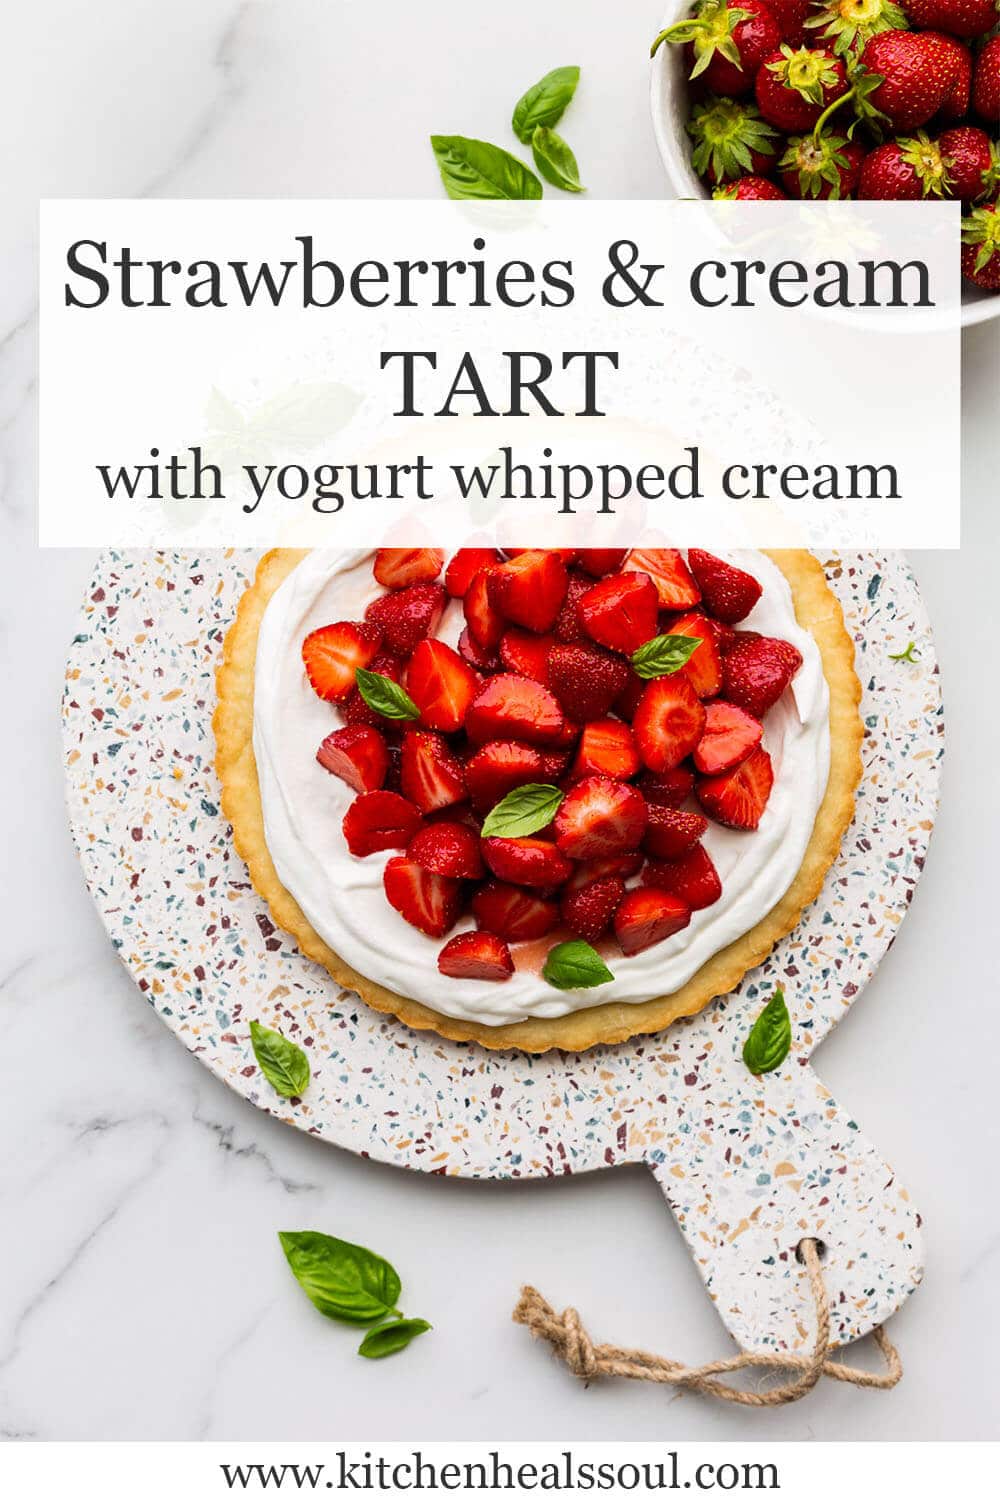 Strawberries & cream tart with yogurt whipped cream